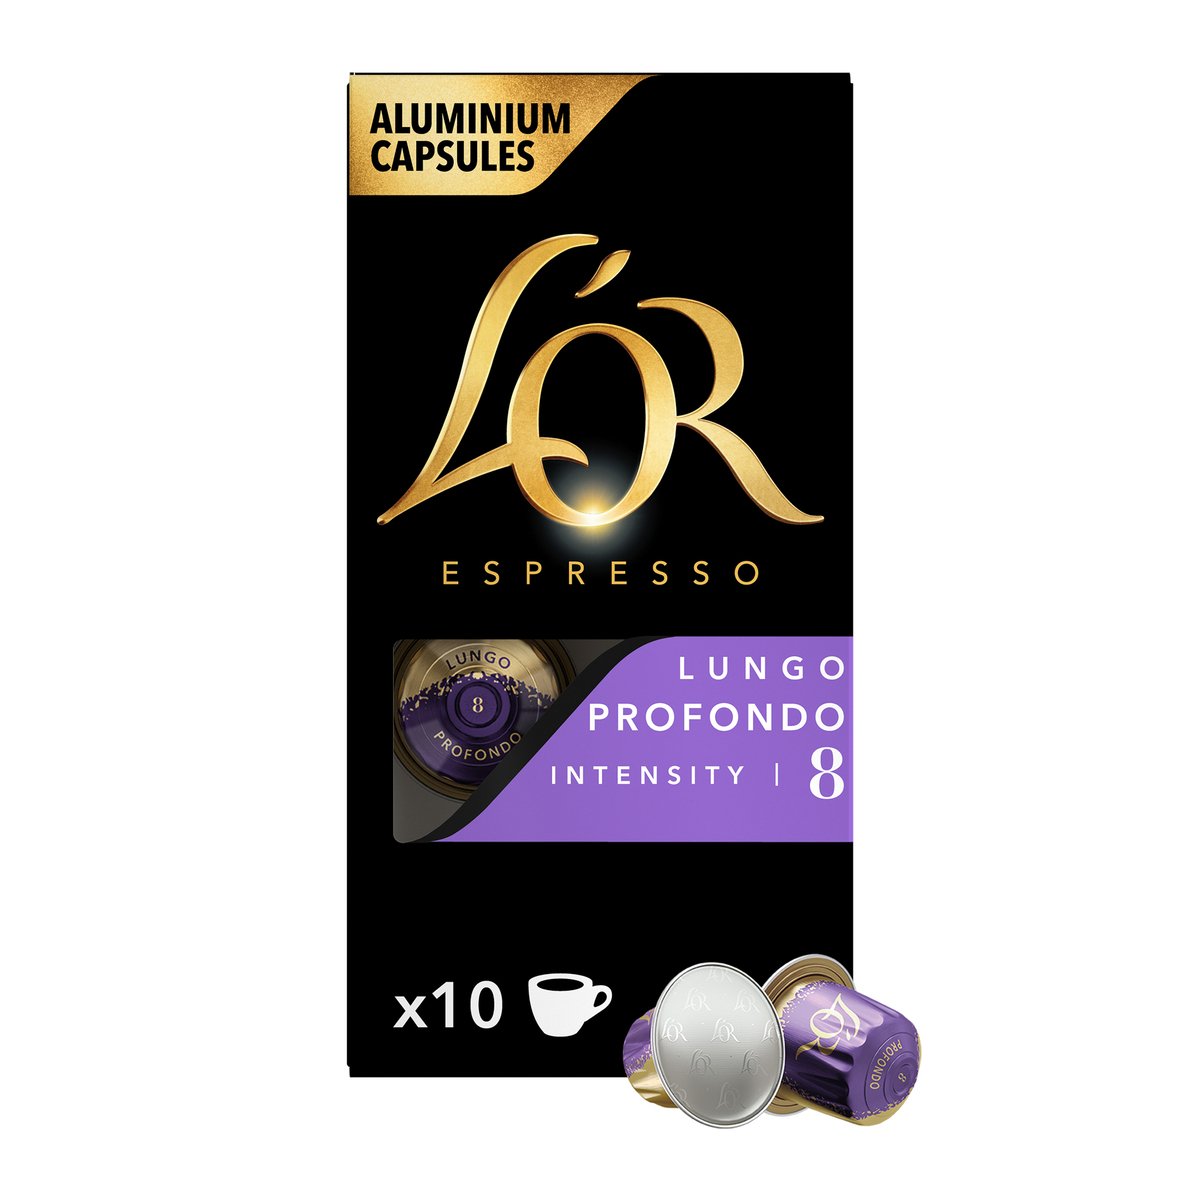 لور اسبريسو لونجو بروفوندو كبسولات قهوة ألومنيوم بكثافة 8 عبوة توفيرية 10 حبات